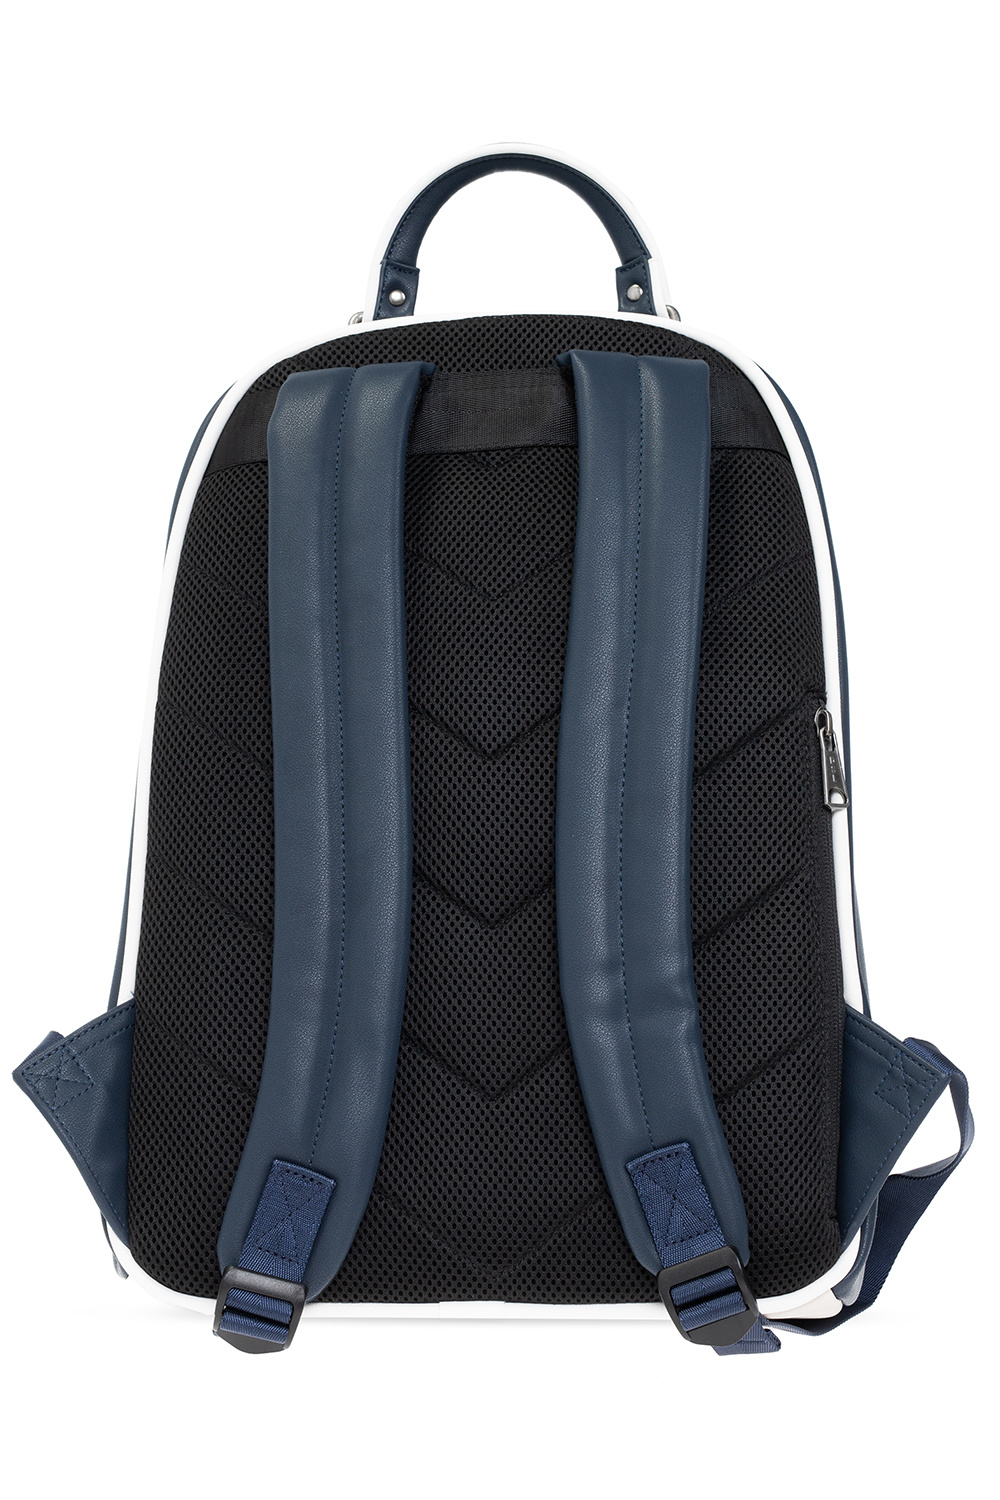 Beige ‘Hein DB’ backpack Diesel - Vitkac GB